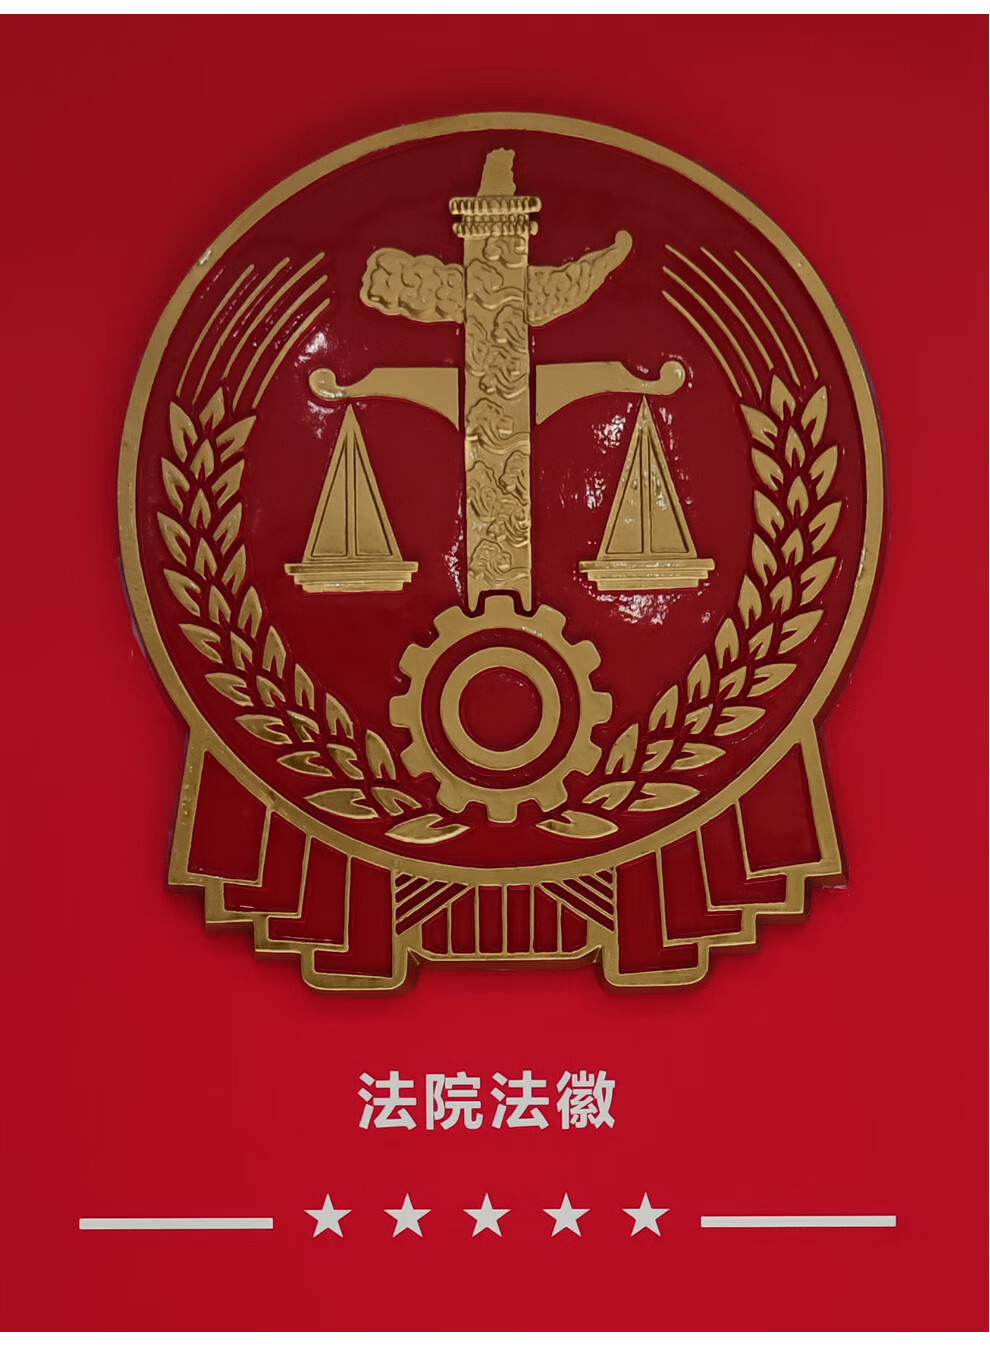 法院徽章壁纸图片